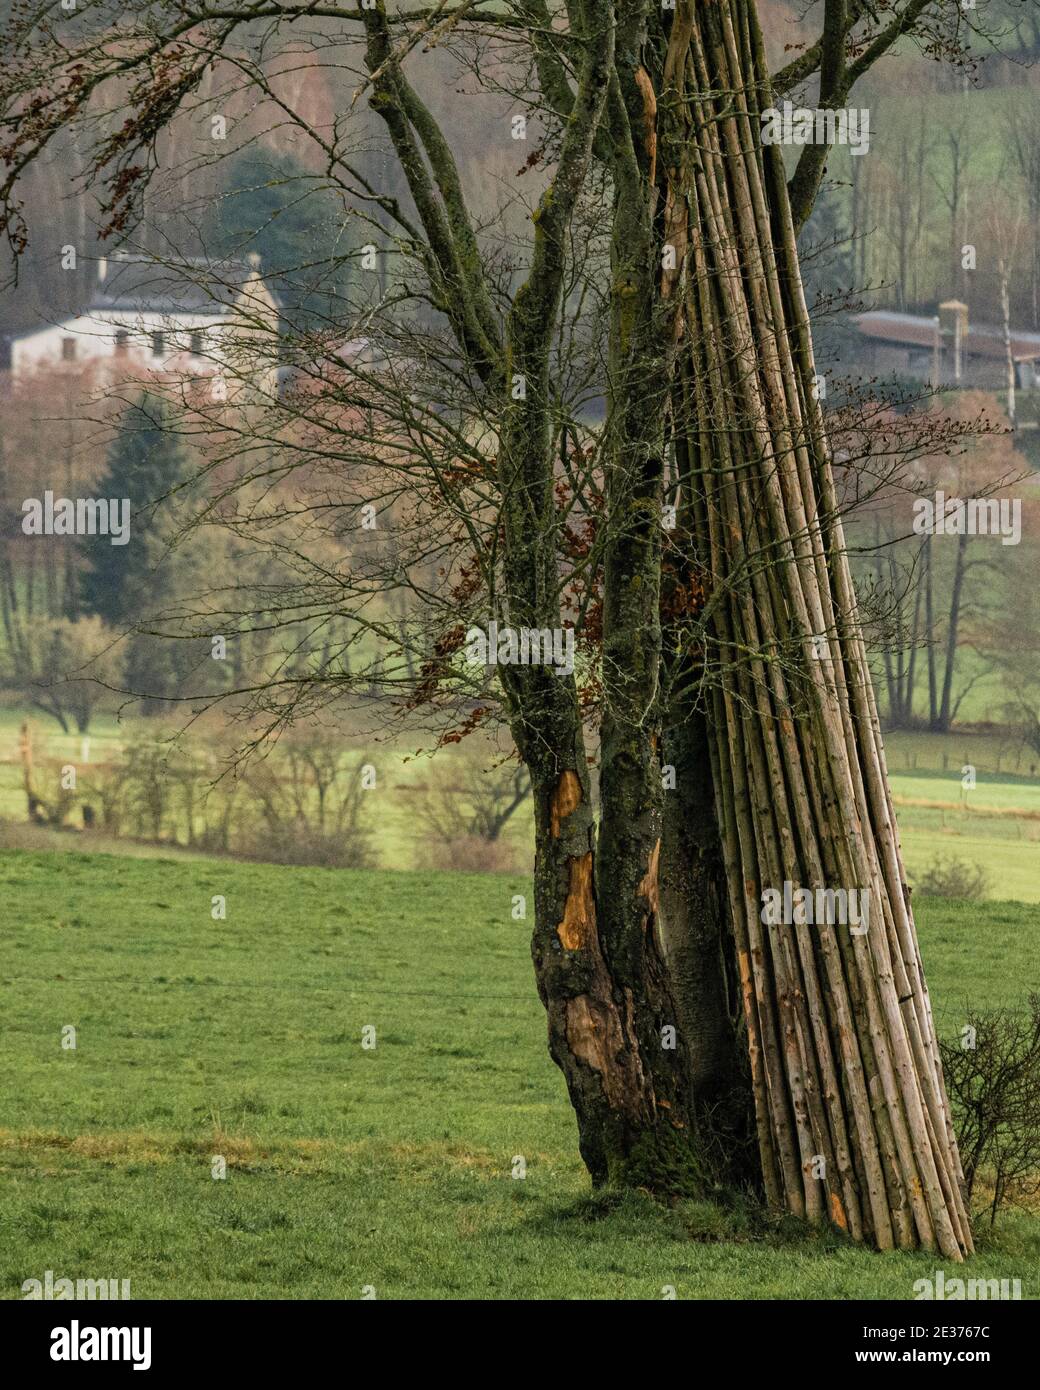 Un fagot de rondins posés contre un arbre Foto de stock